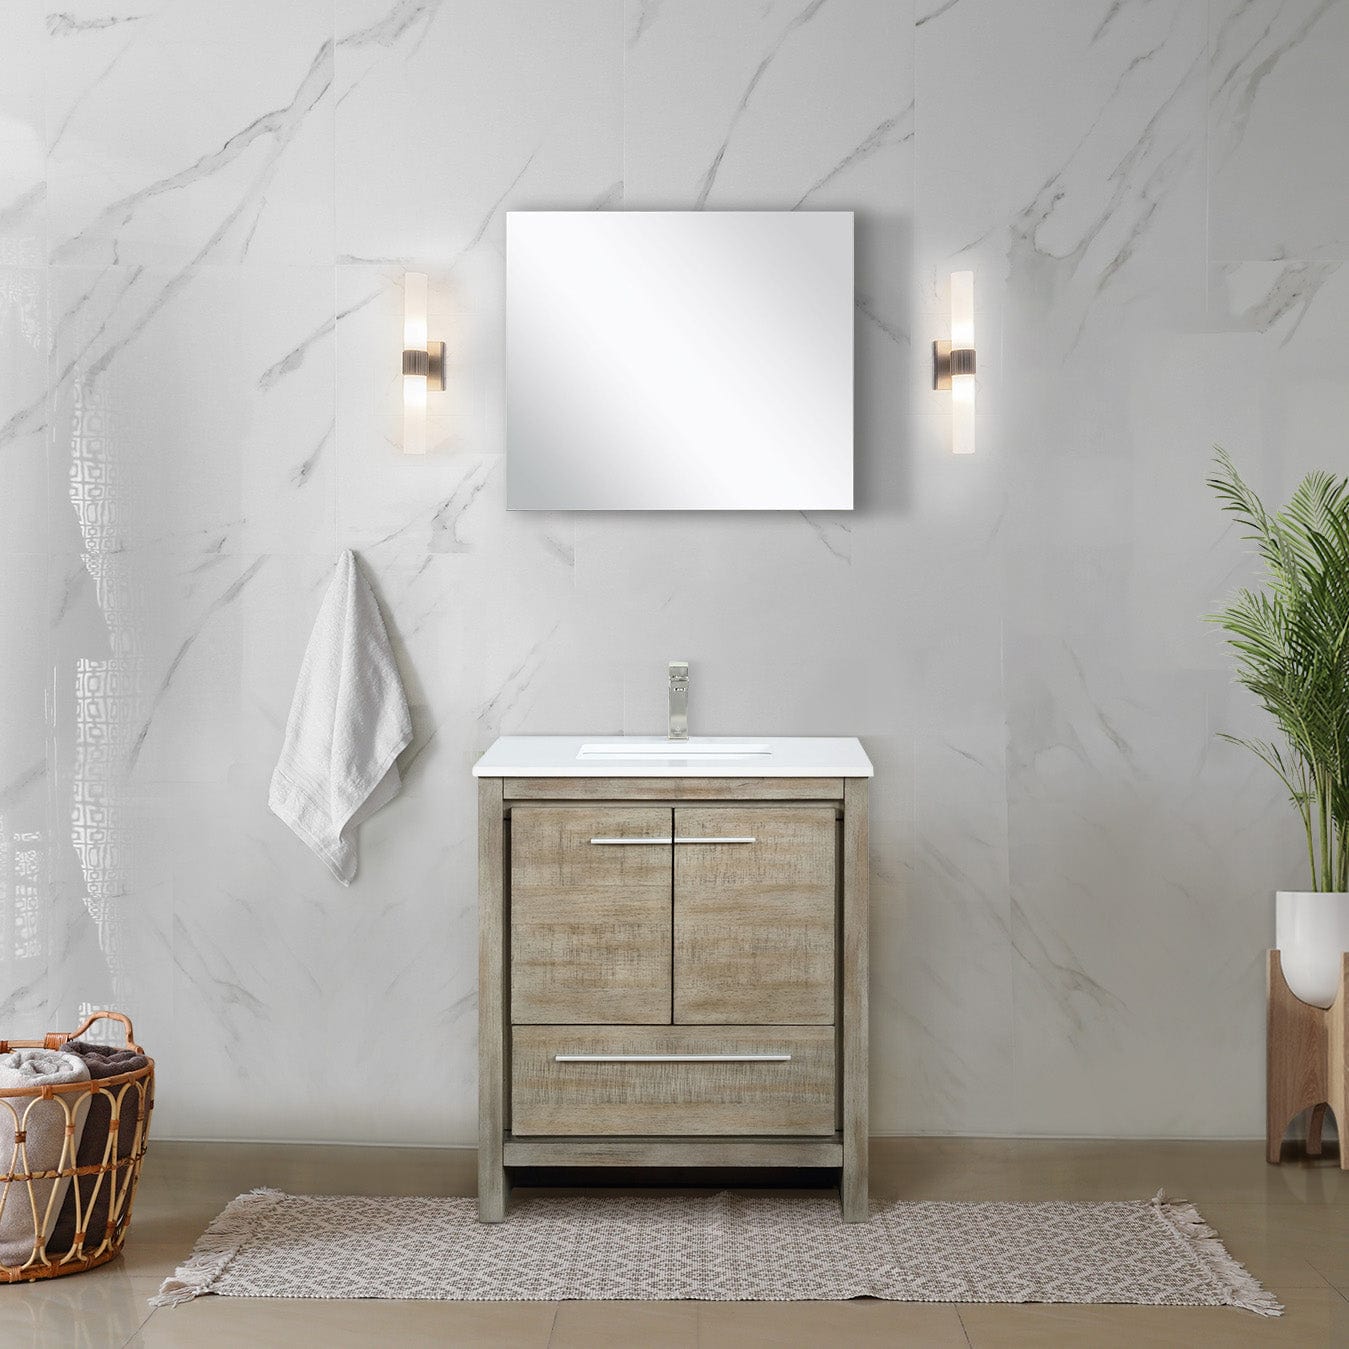 Lexora Bathroom Vanity Cultured Marble / No Faucet / No Mirror Lafarre 30" Rustic Acacia Bathroom Vanity